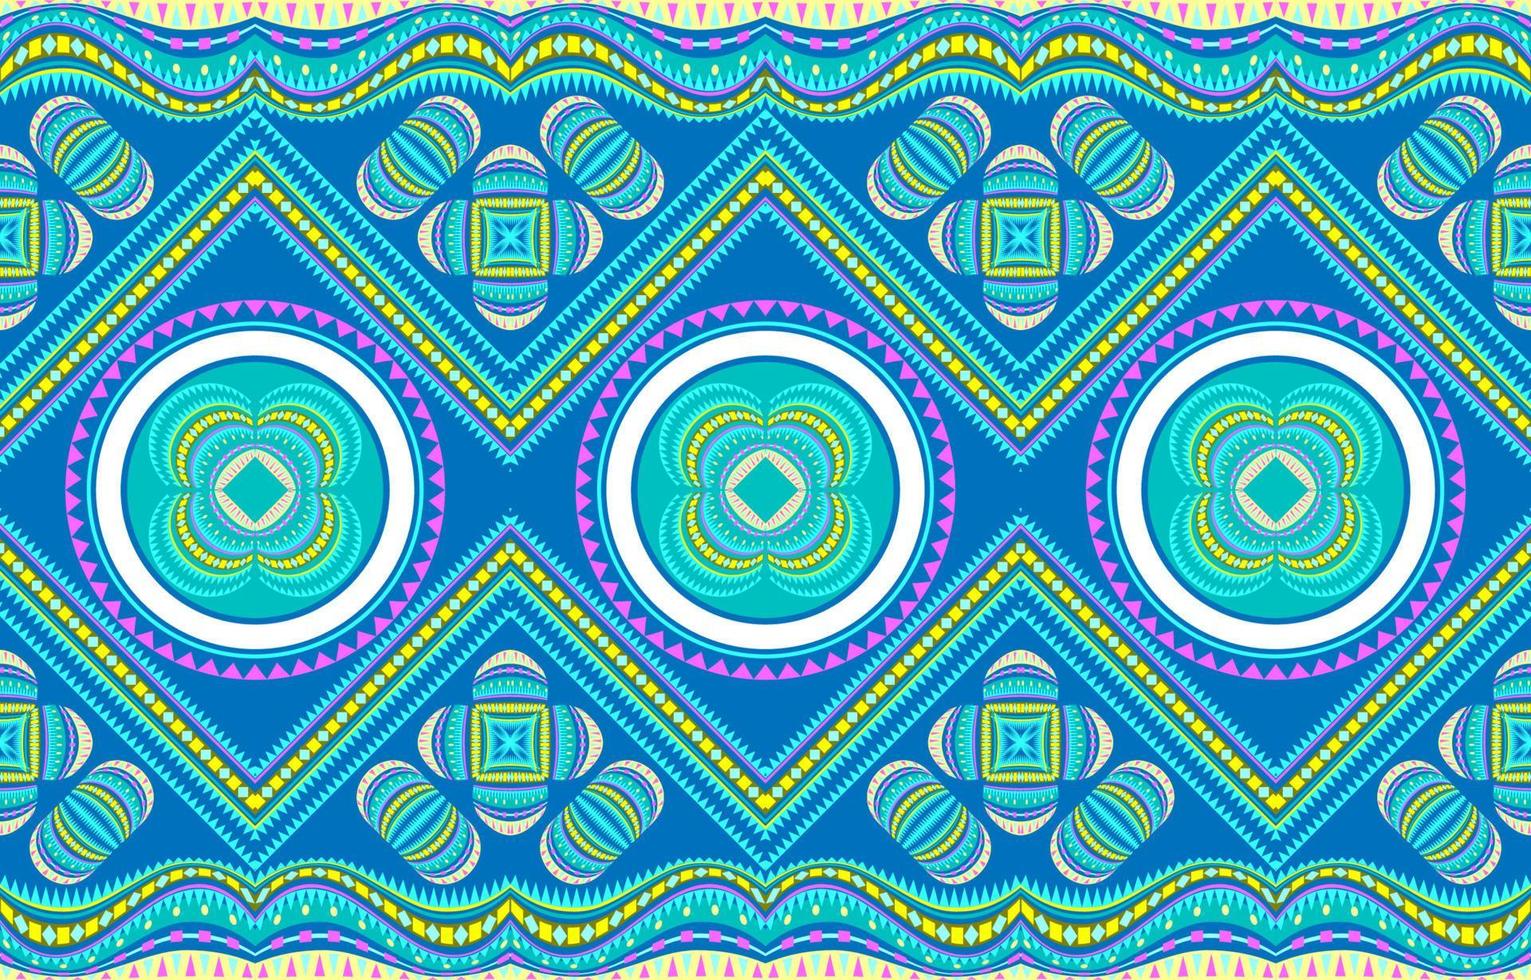 tecido têxtil padrão flor círculo ondulado diagonal curva listras. étnico geométrico tribal nativo asteca arabesco tecido tapete indiano árabe africano padrões sem emenda. bordado gráfico de linha ornamentada. vetor